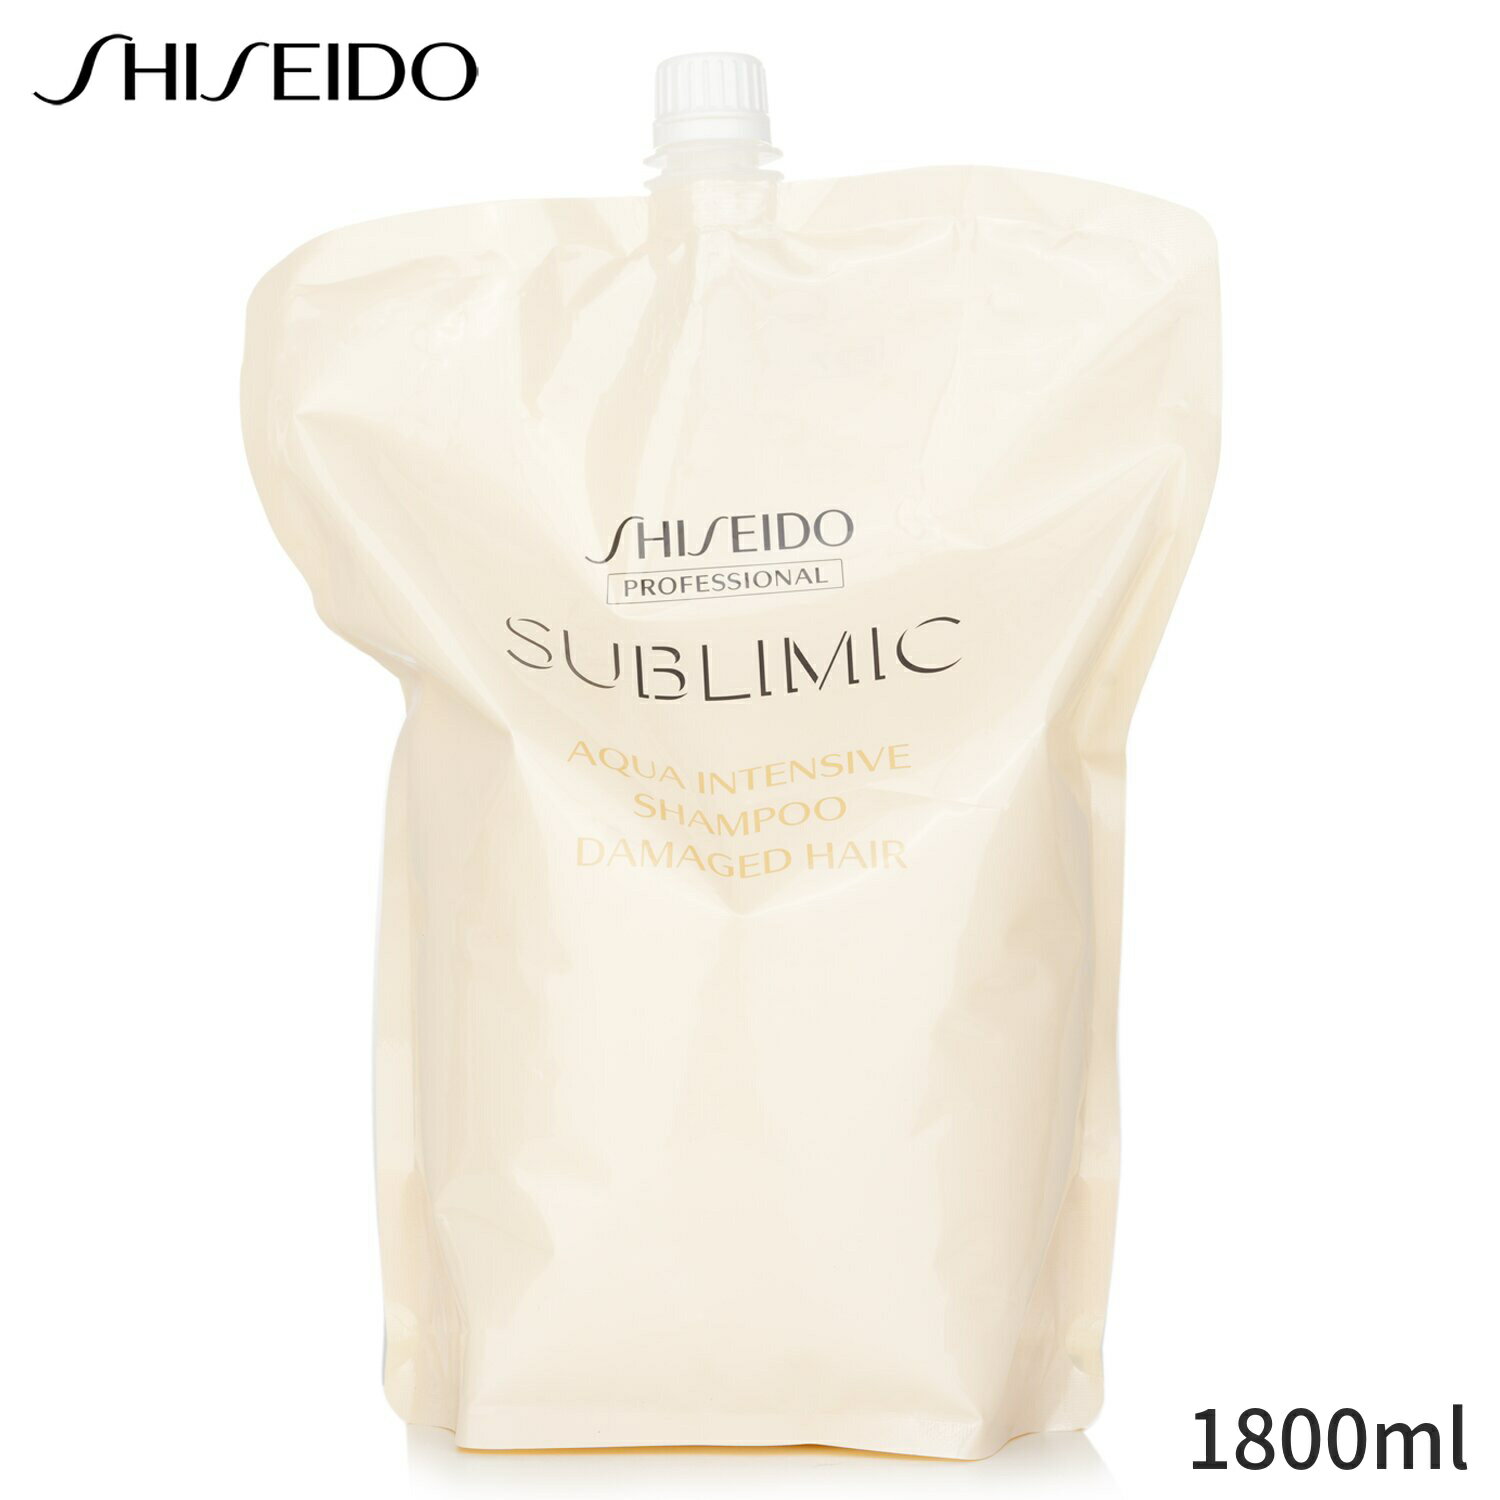 資生堂 シャンプー Shiseido Sublimic Aqua Intensive Shampoo Refill (Damaged Hair) 1800ml ヘアケア 母の日 プレゼント ギフト 2024 人気 ブランド コスメ